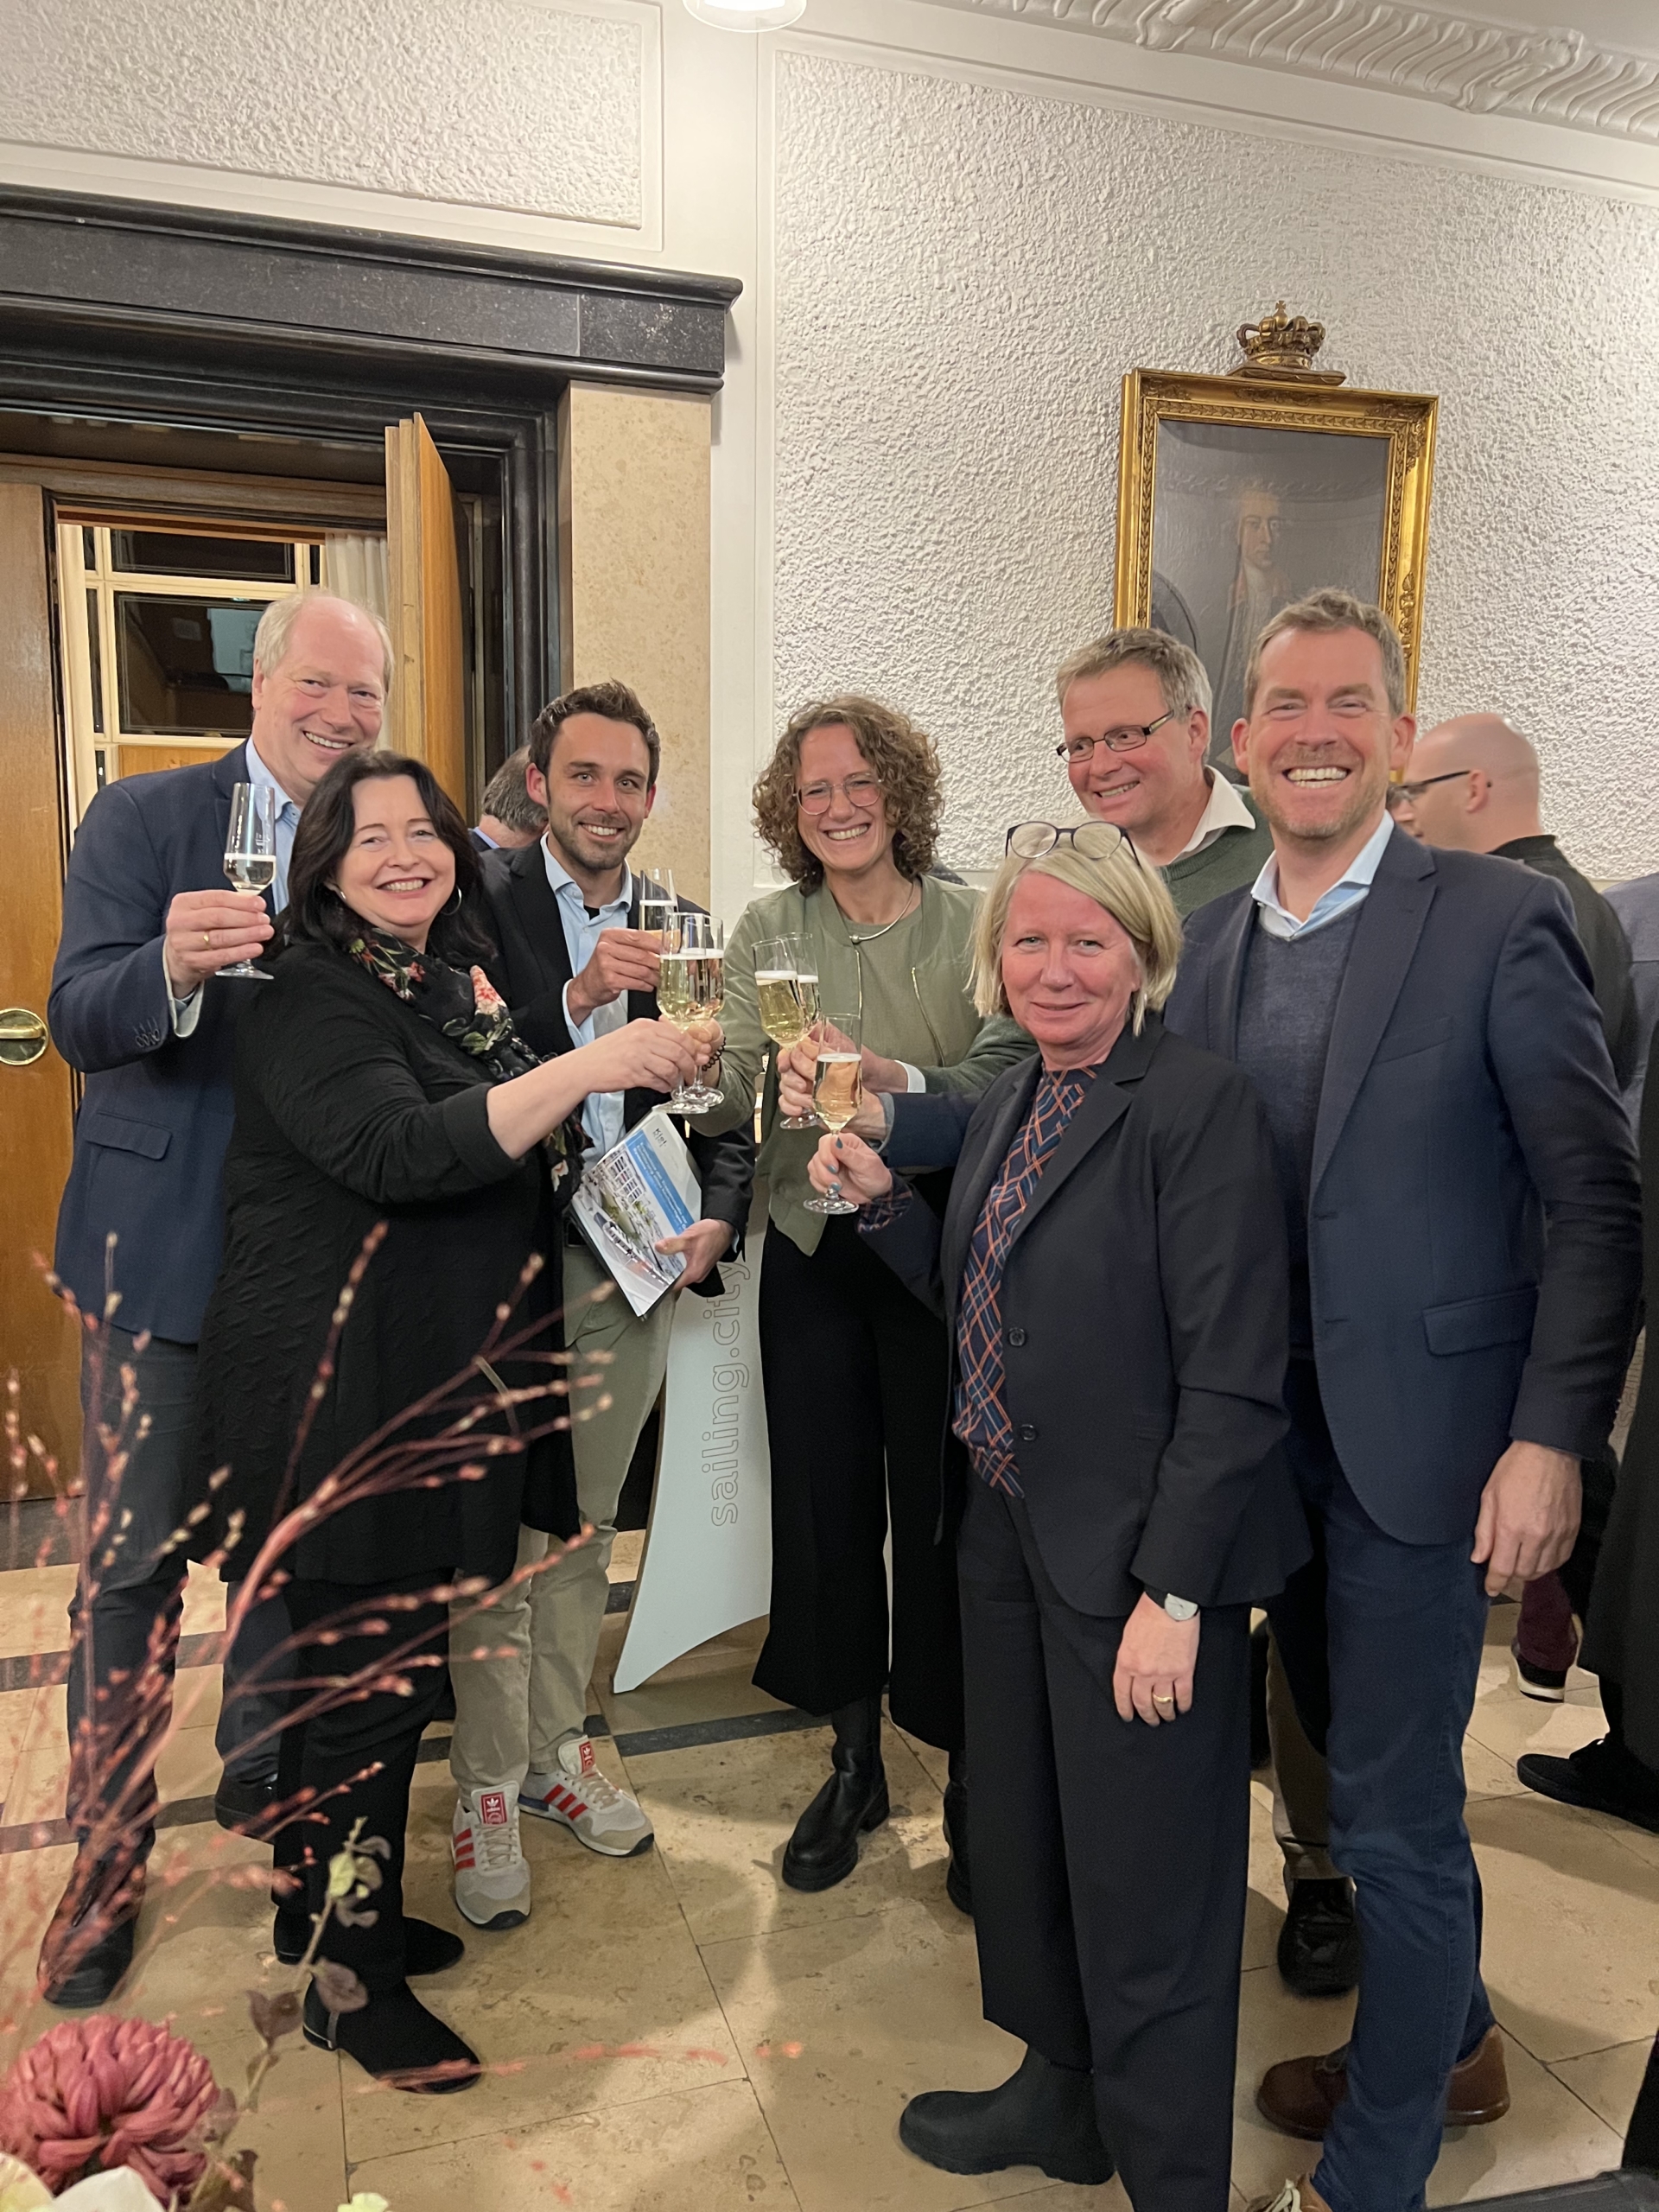 Mitglieder der Kieler Ratsversammlung stoßen voller Freude mit Sekt an